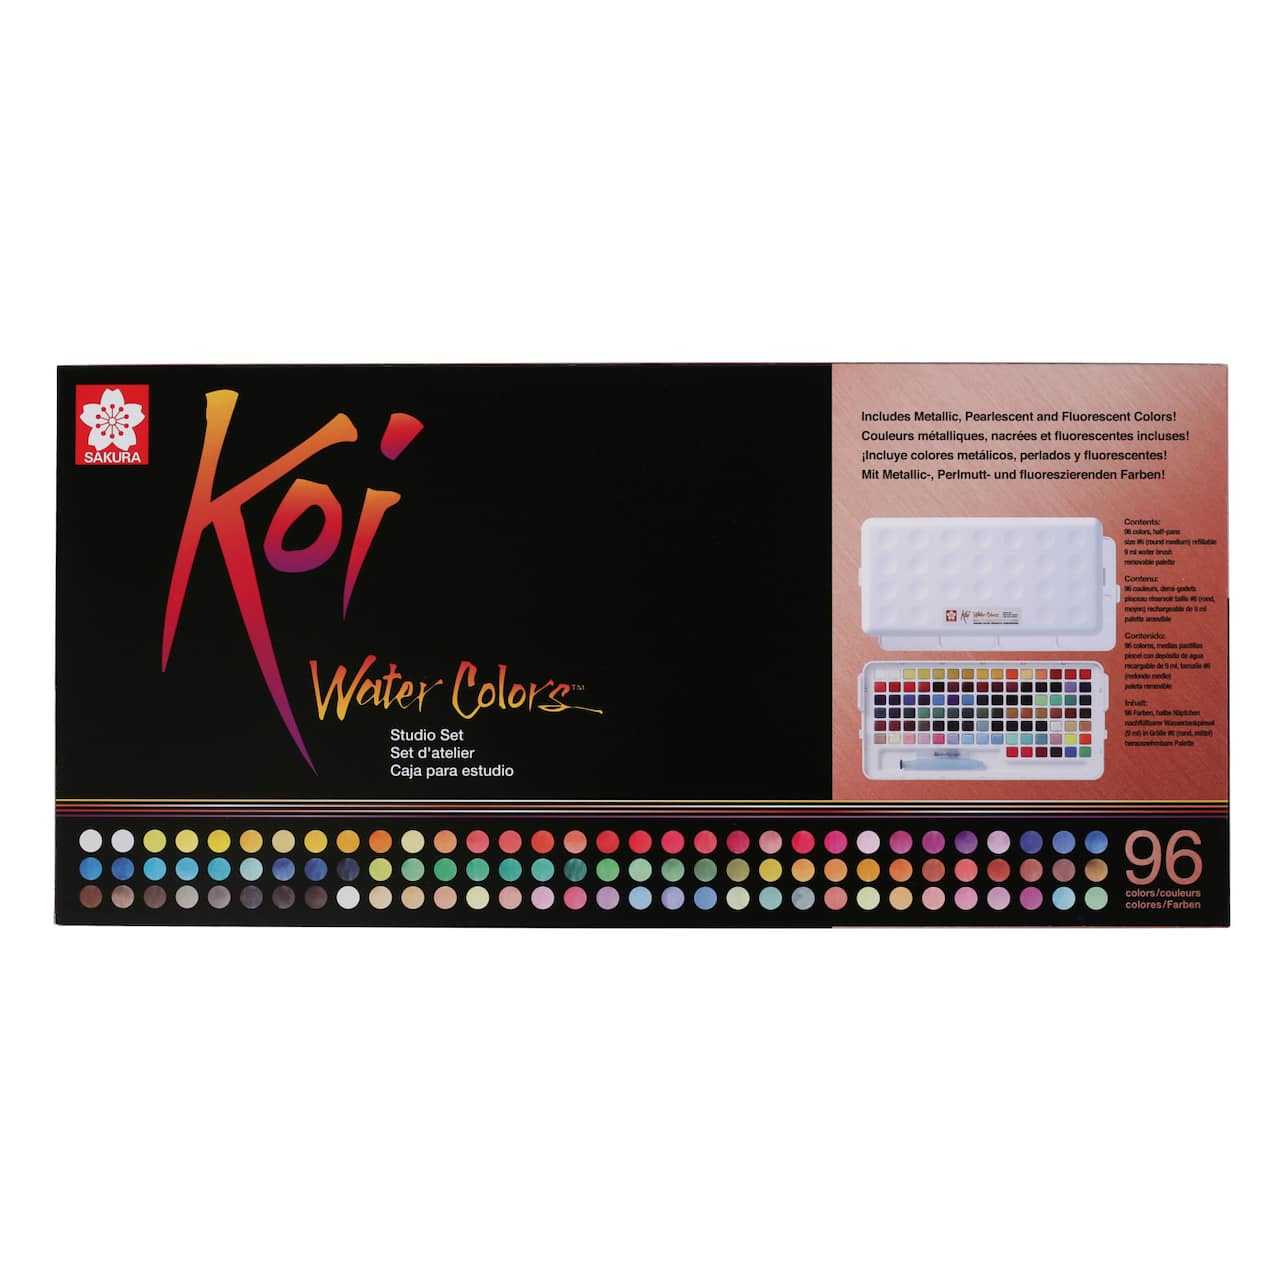 Sakura&#xAE; Koi Water Colors&#x2122; 96 Color Studio Set